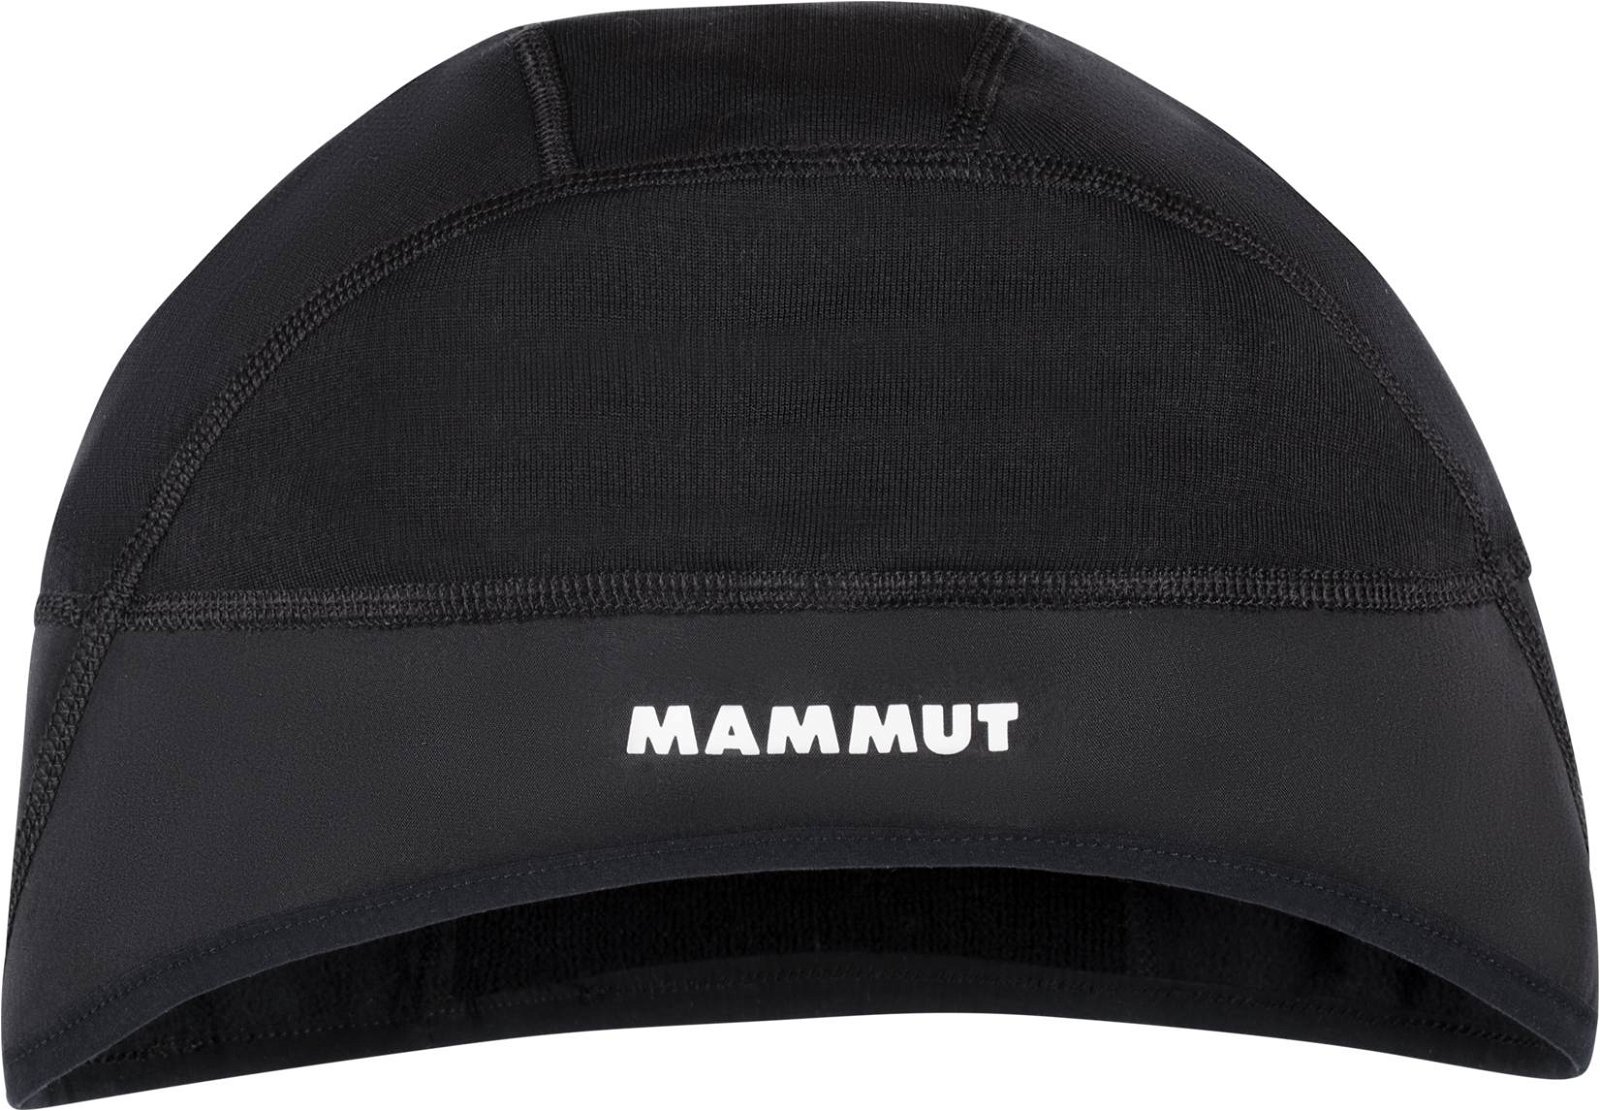 Mammut Helm Cap